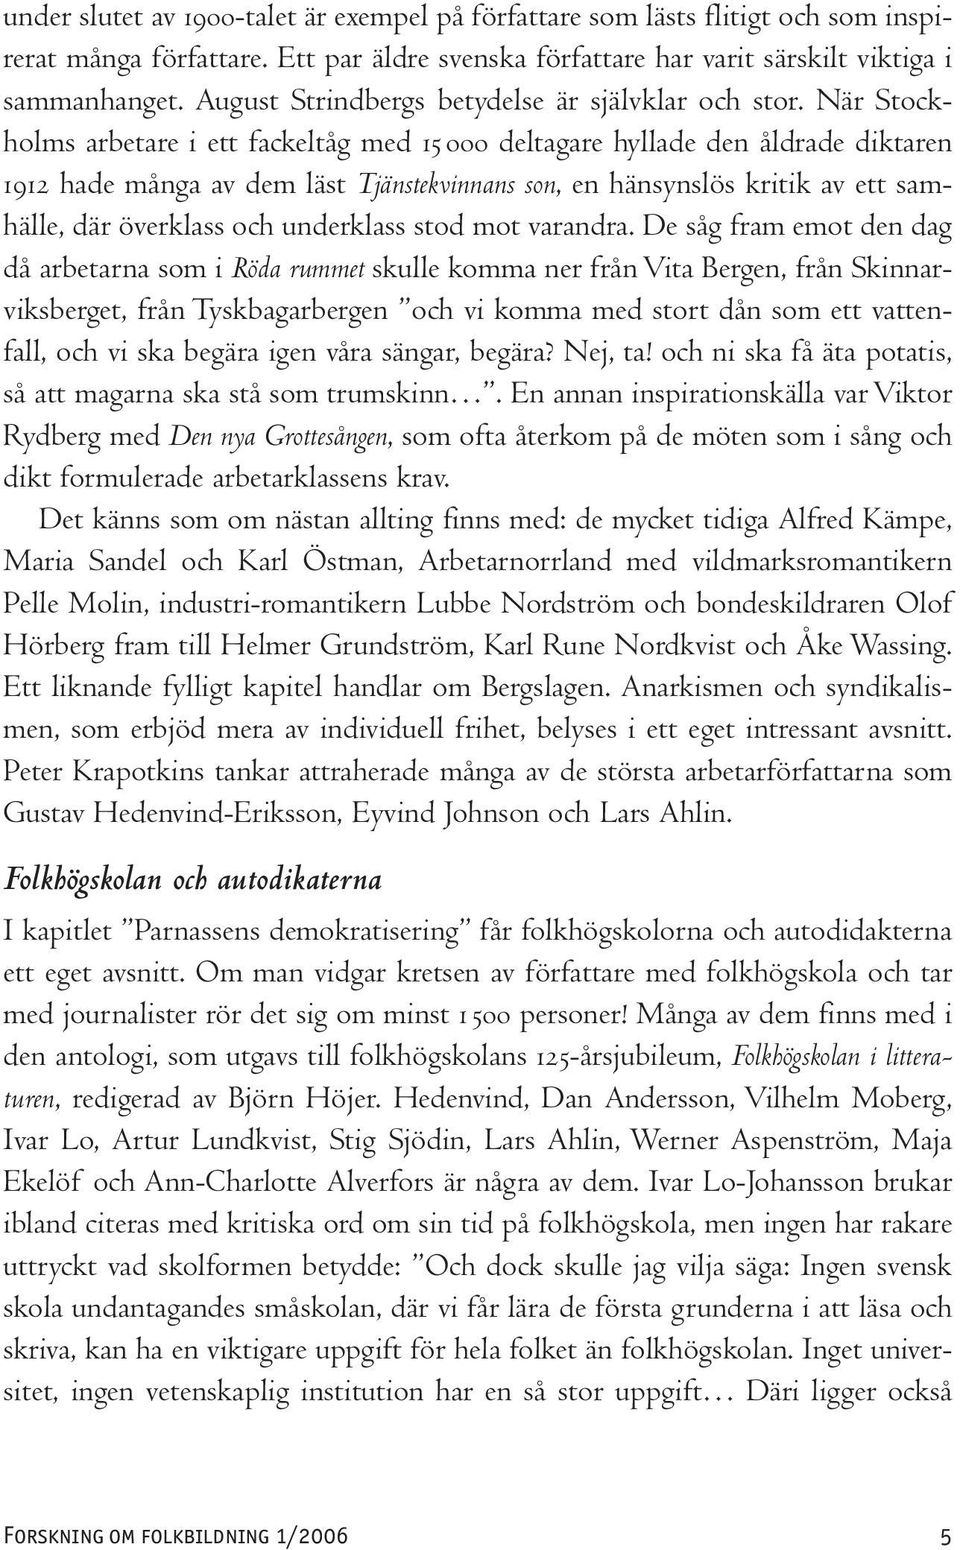 När Stockholms arbetare i ett fackeltåg med 15 000 deltagare hyllade den åldrade diktaren 1912 hade många av dem läst Tjänstekvinnans son, en hänsynslös kritik av ett samhälle, där överklass och